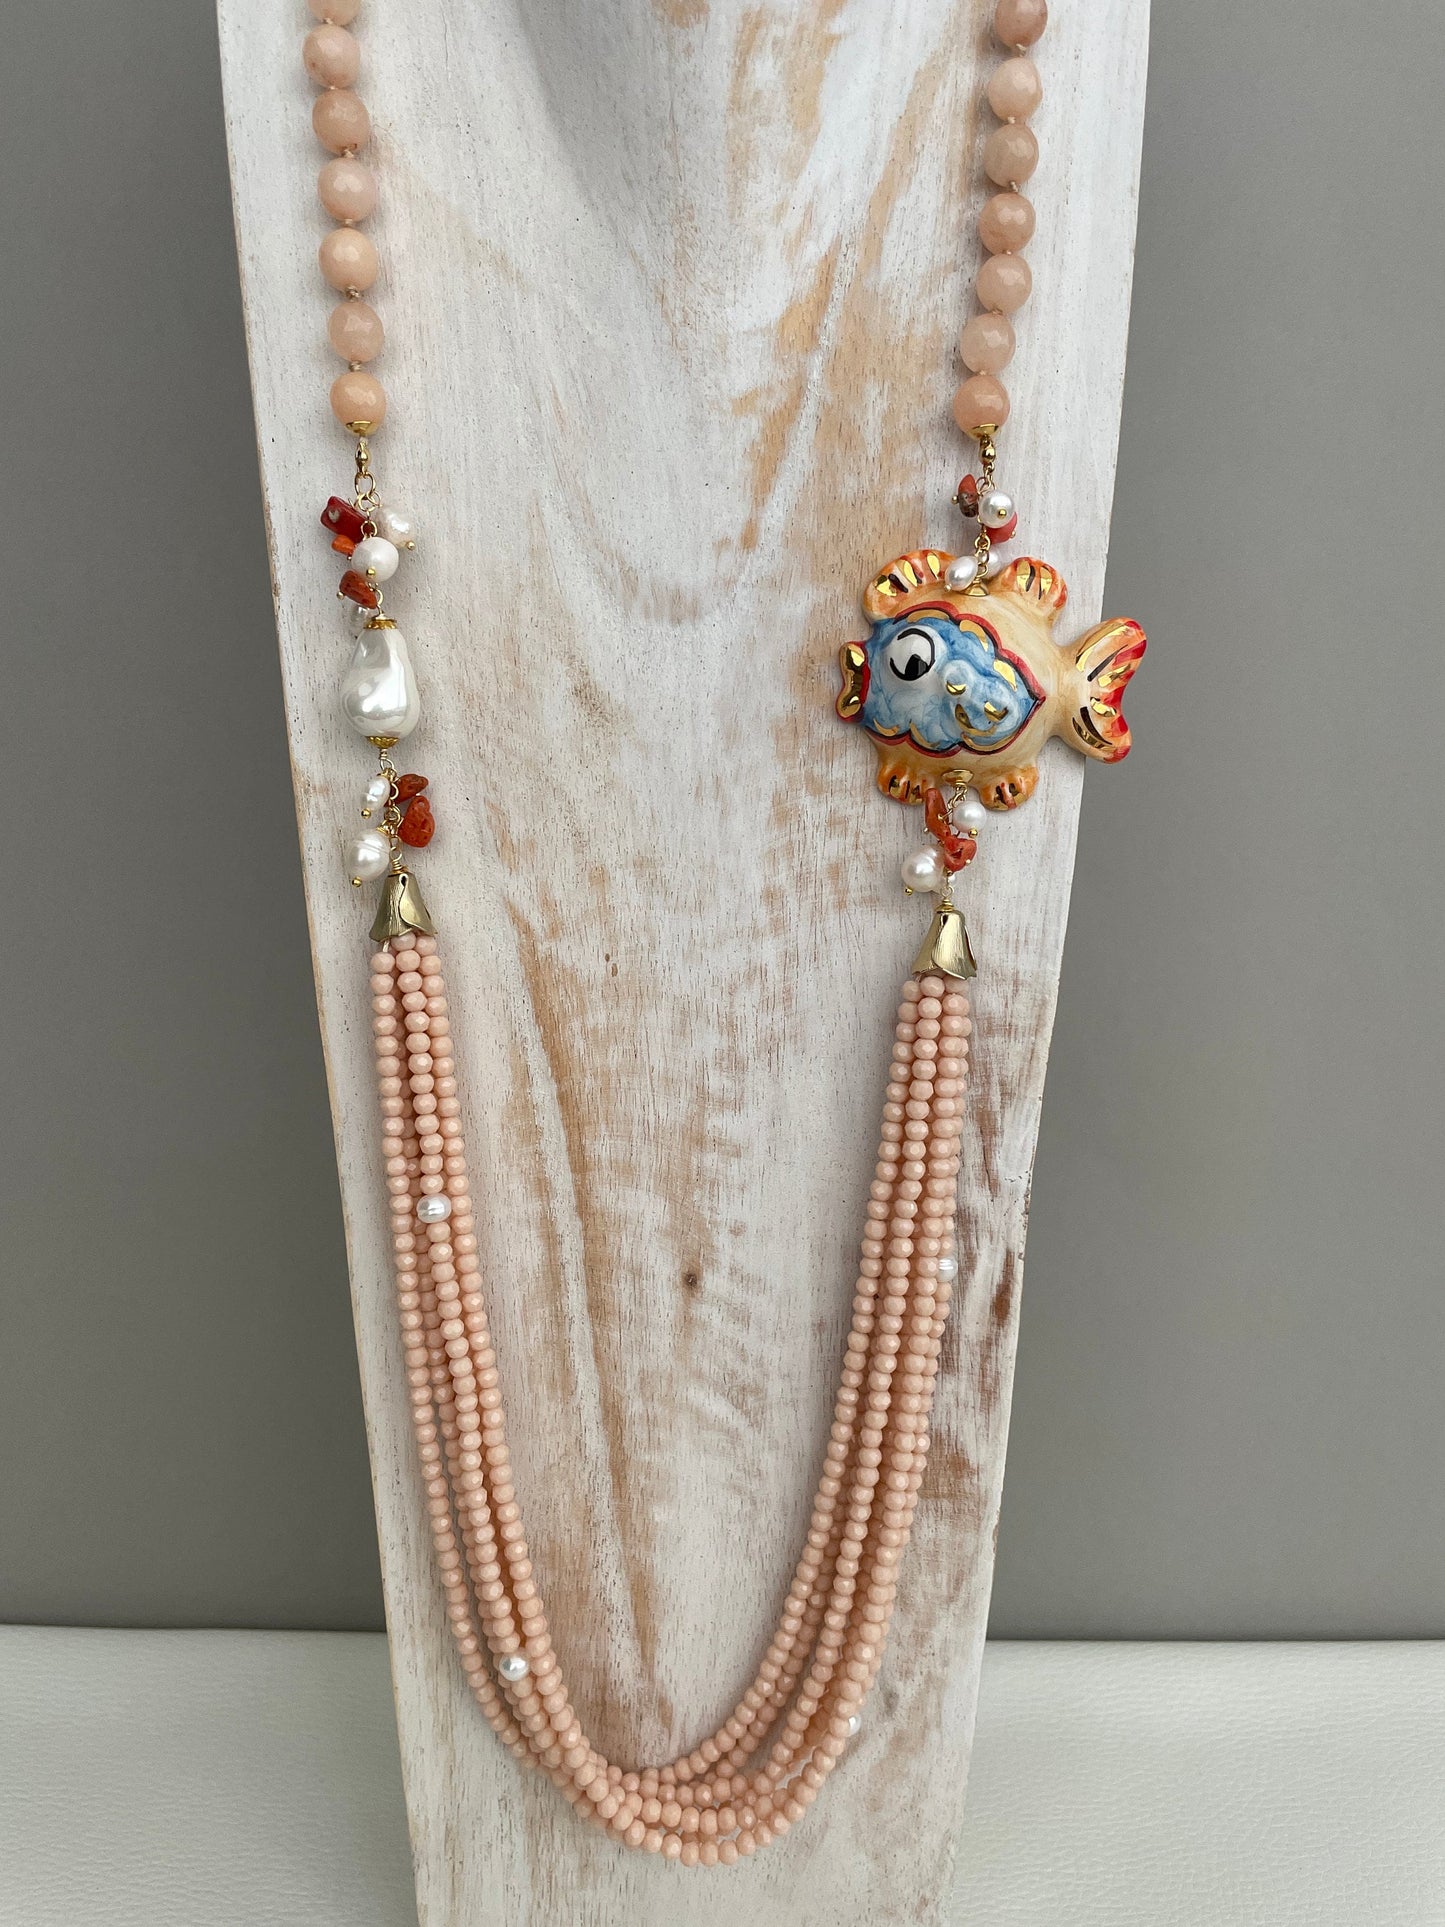 Collana siciliana, collana rosa chiaro, collana con pesce di ceramica di Caltagirone, collana pietre naturali e cristalli, collana lunga. ç